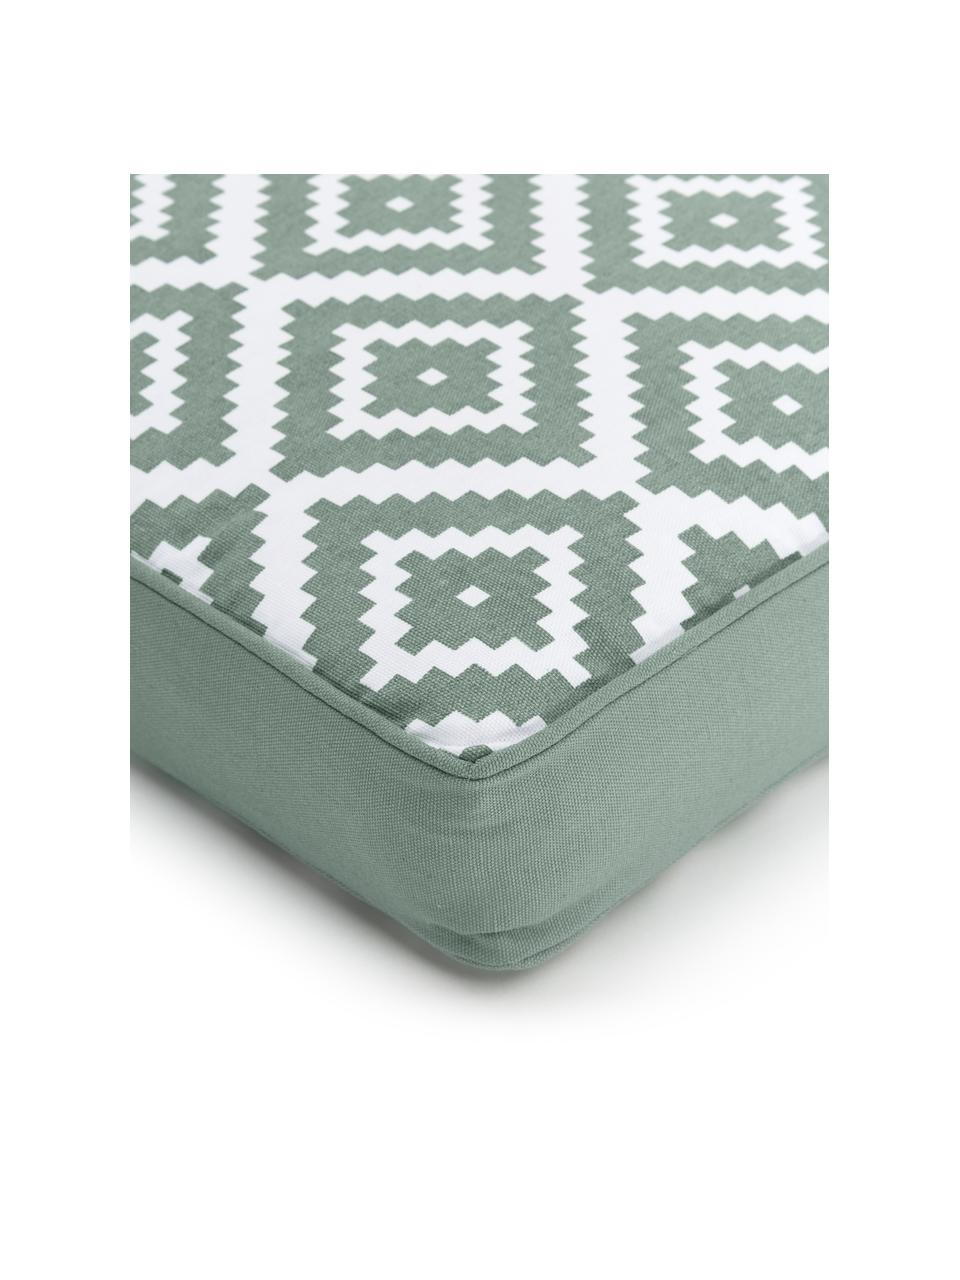 Hohes Sitzkissen Miami in Salbeigrün/Weiß, Bezug: 100% Baumwolle, Grün, B 40 x L 40 cm